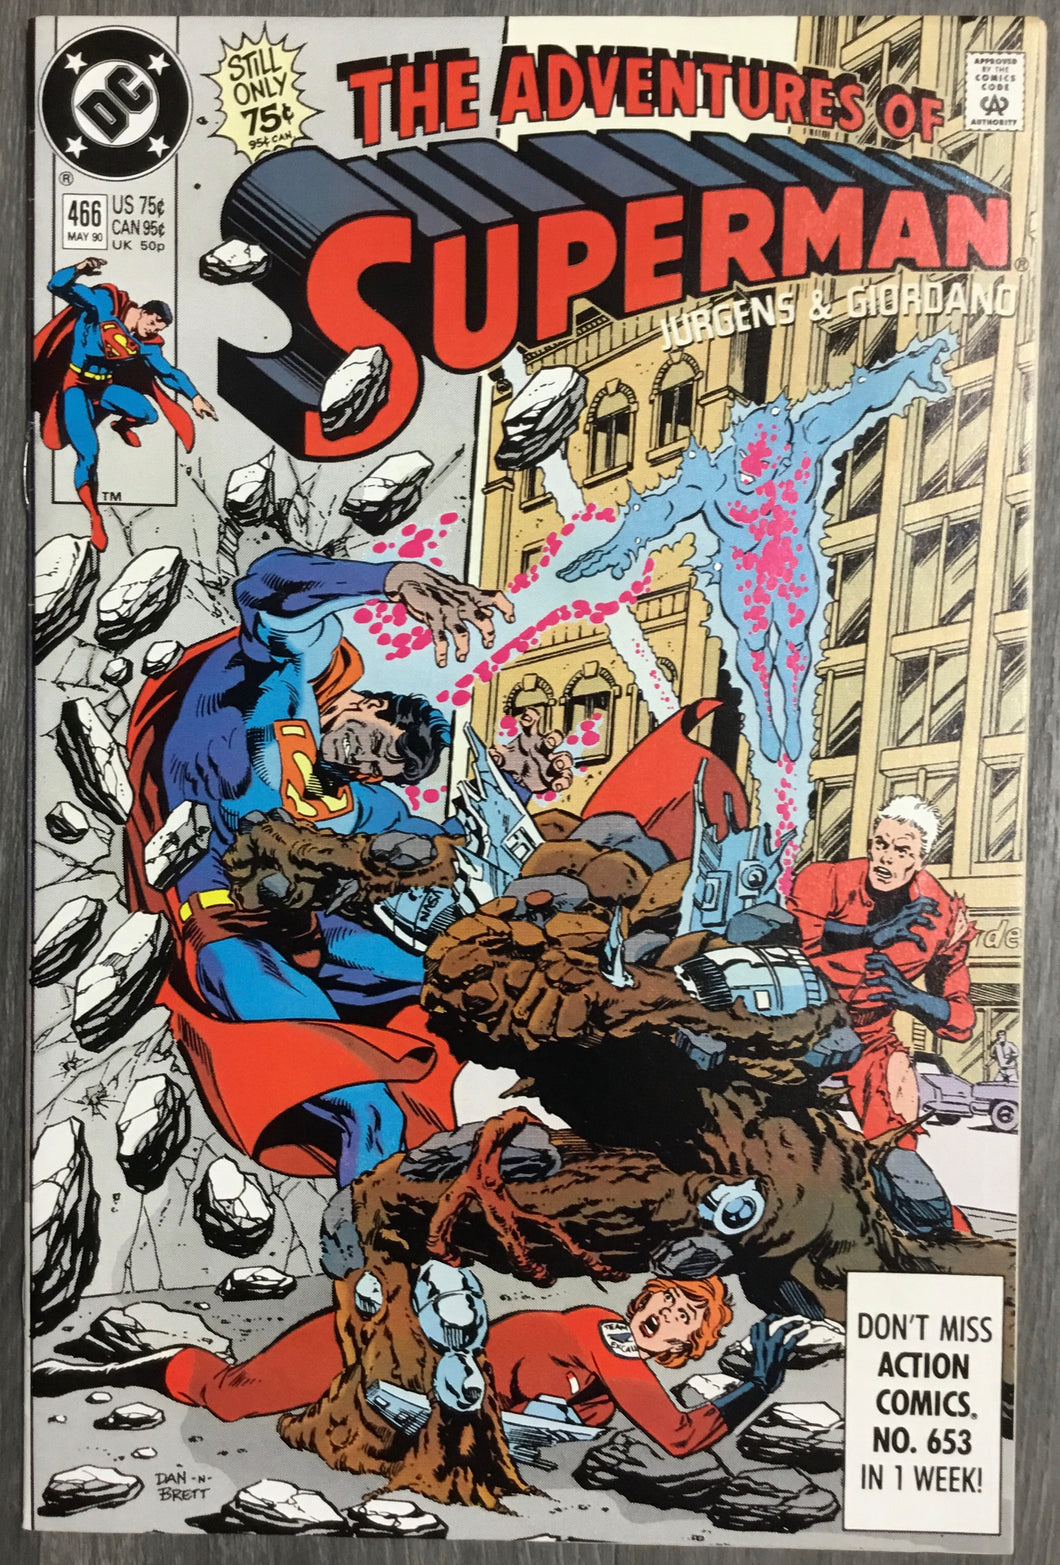 Adventures of Superman No. #466 1990 DC Comics